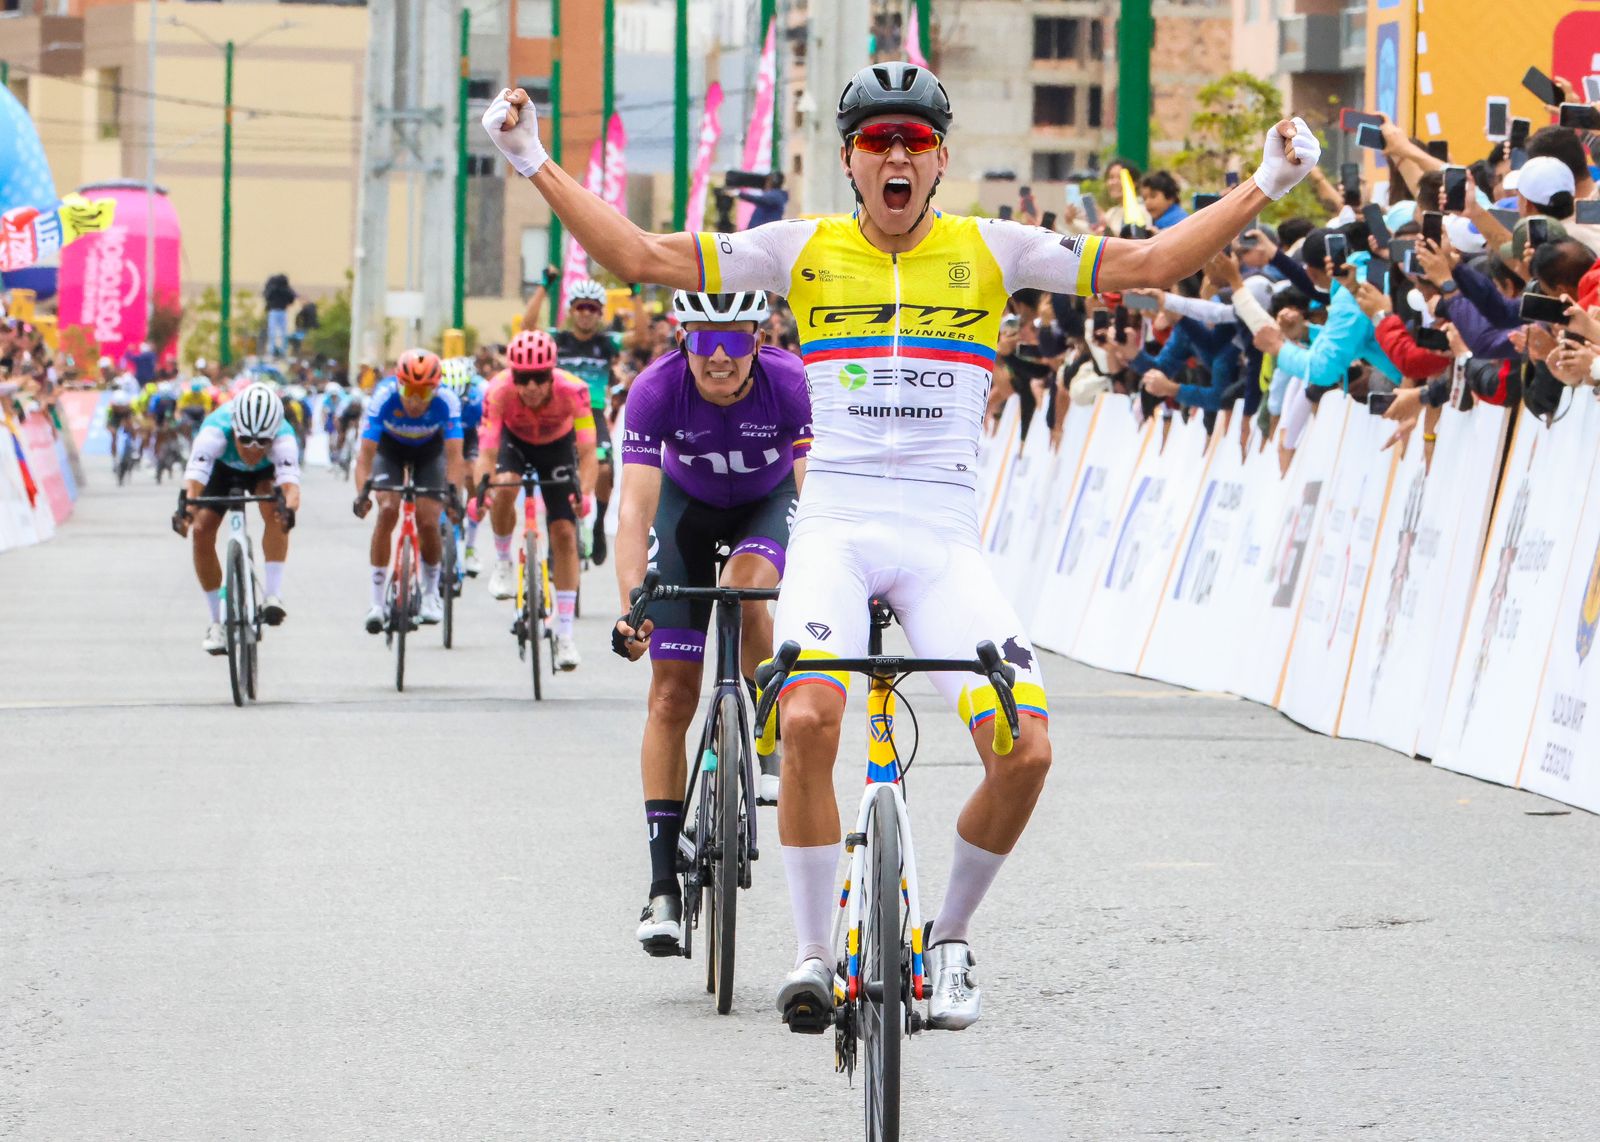 El ‘Pony’ Osorio cabalgó en el circuito de Tunja y se llevó la tercera etapa del Tour Colombia, Contreras es nuevo líder